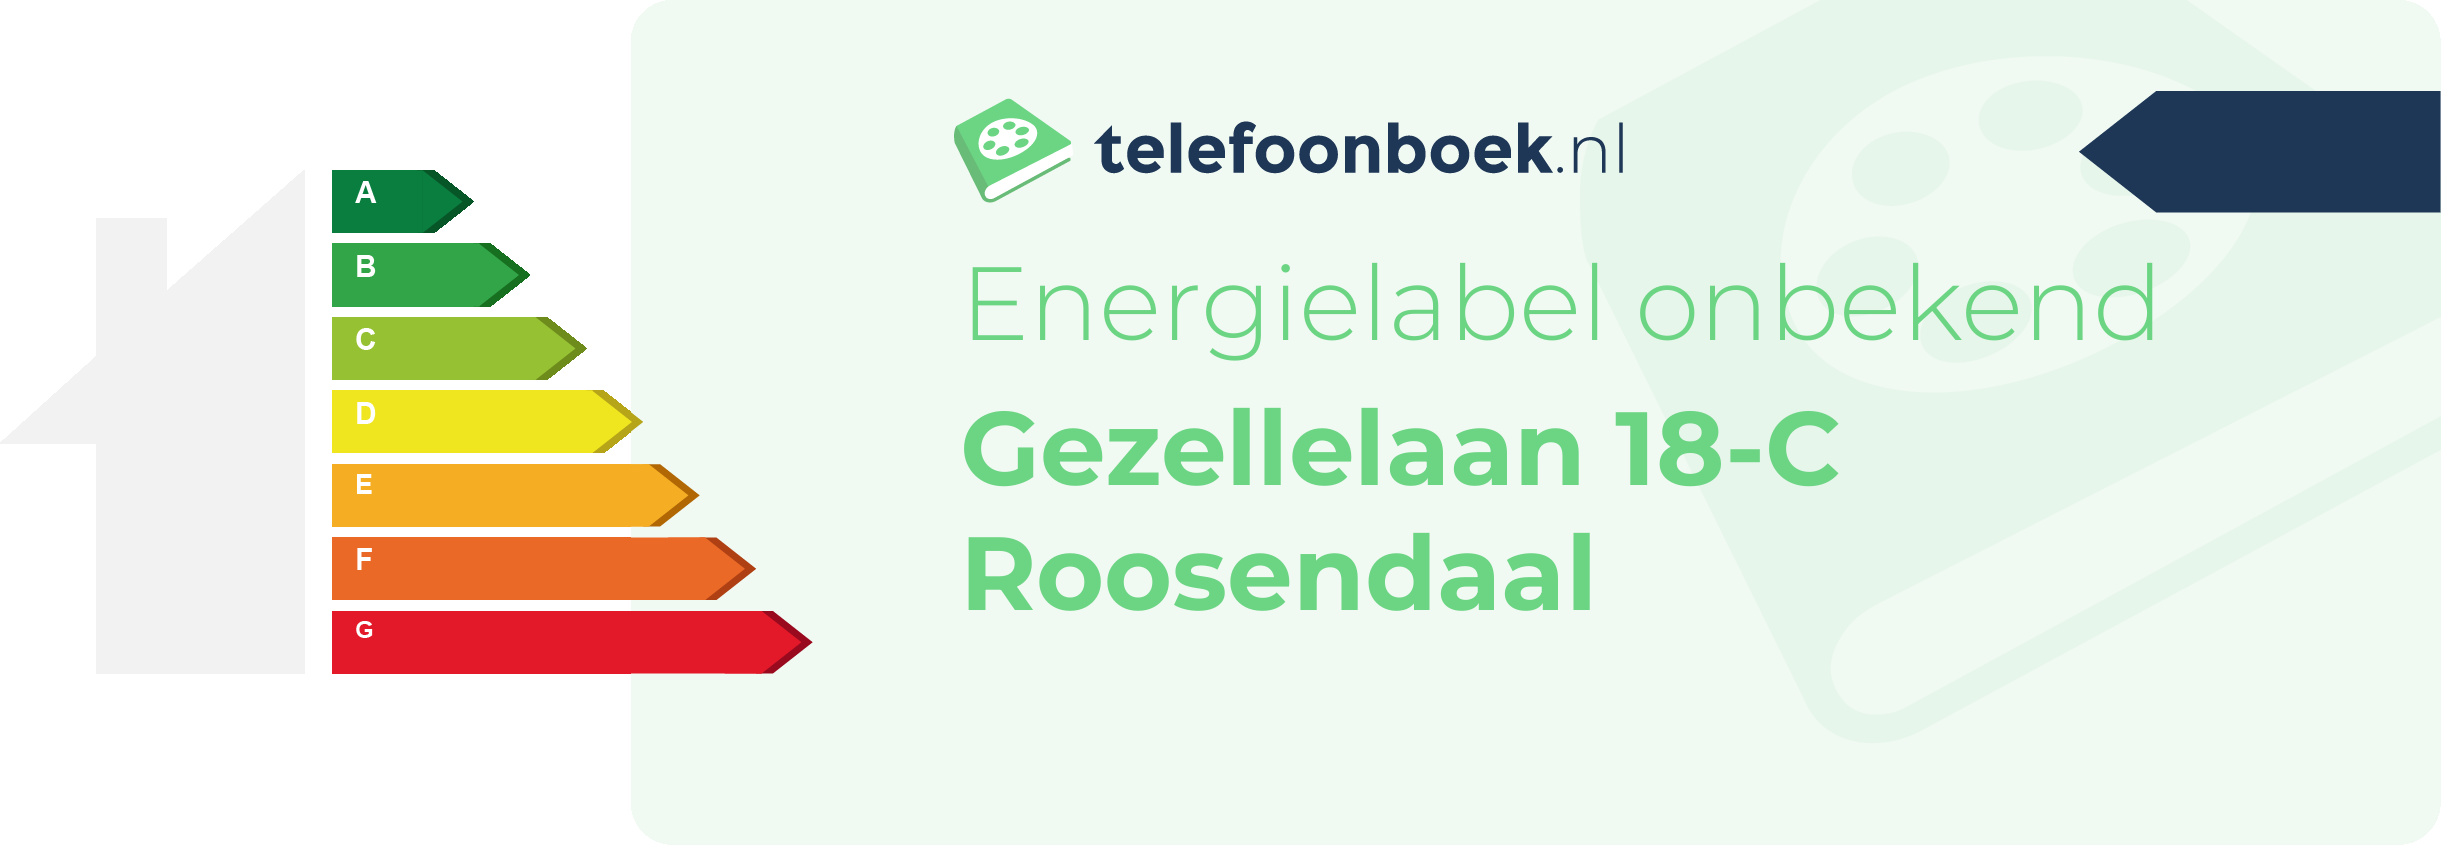 Energielabel Gezellelaan 18-C Roosendaal